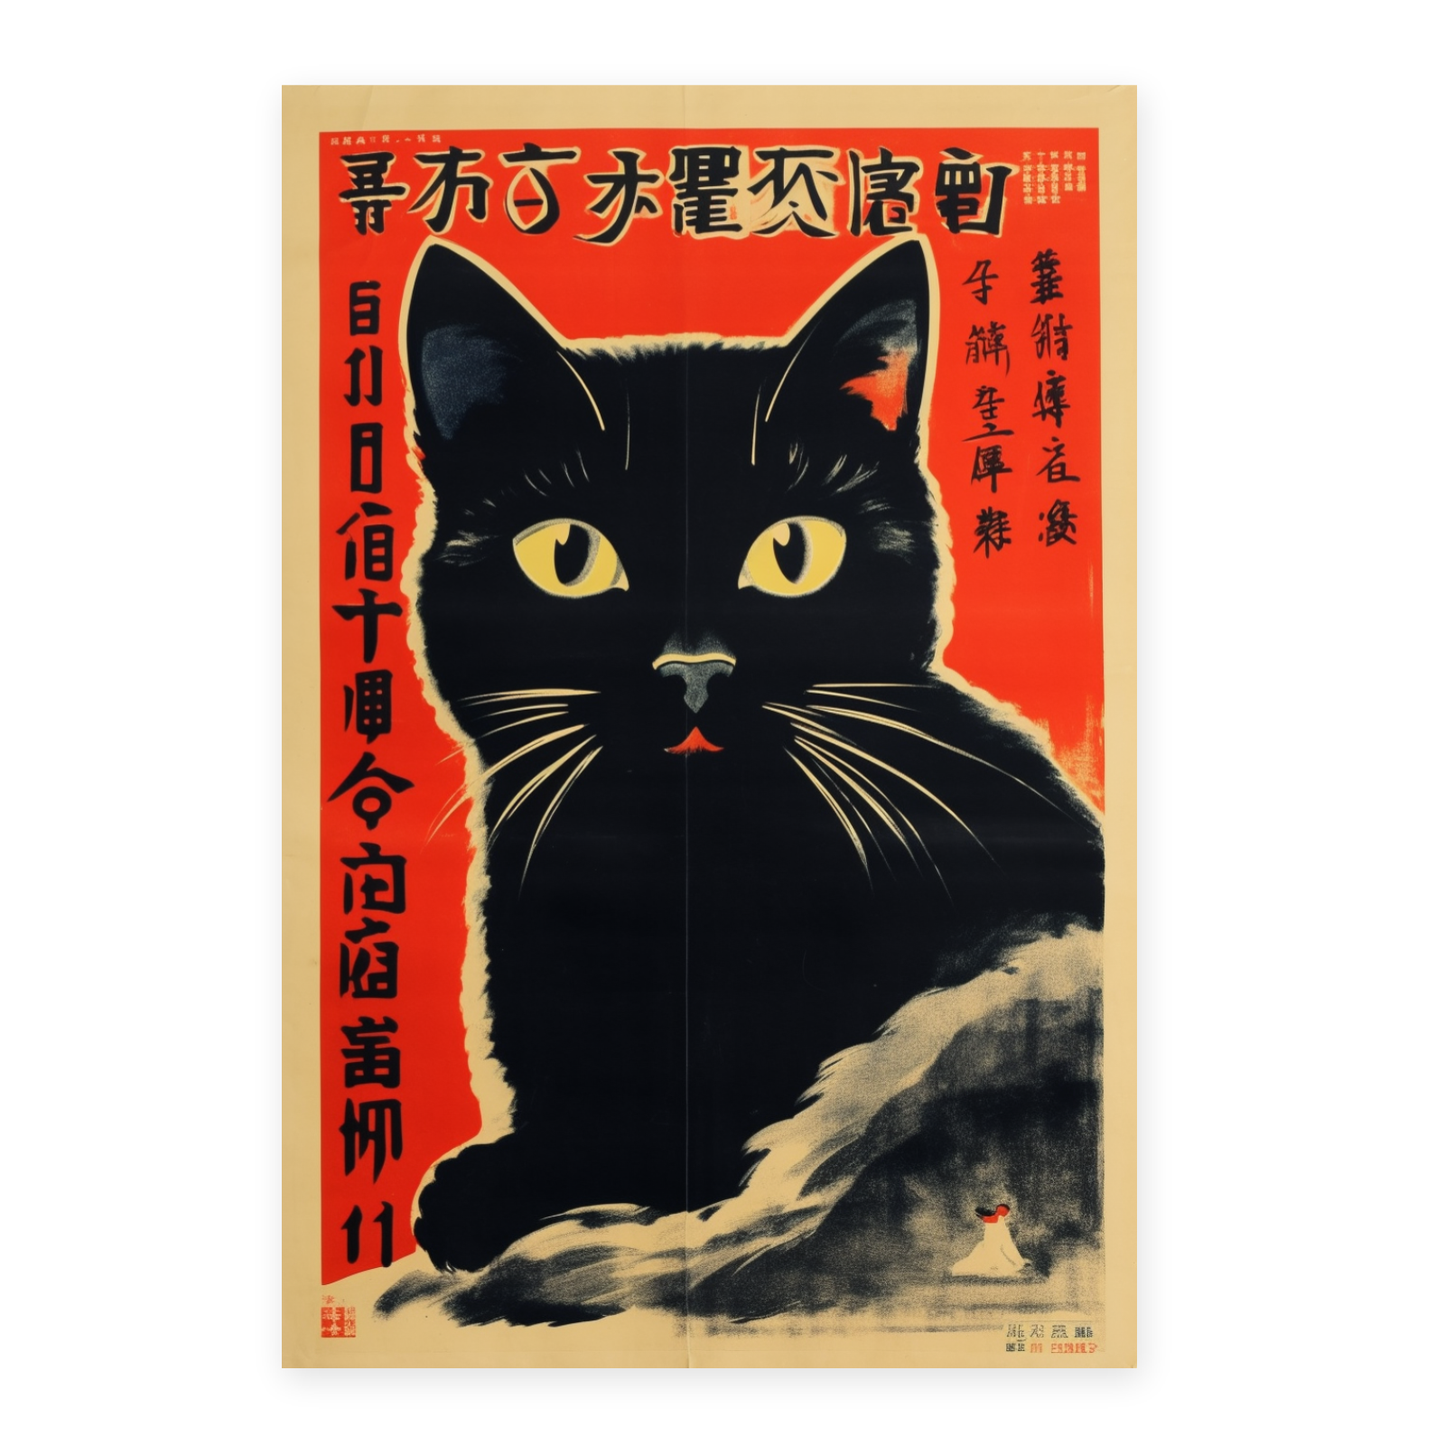 Póster del gato comunista chino